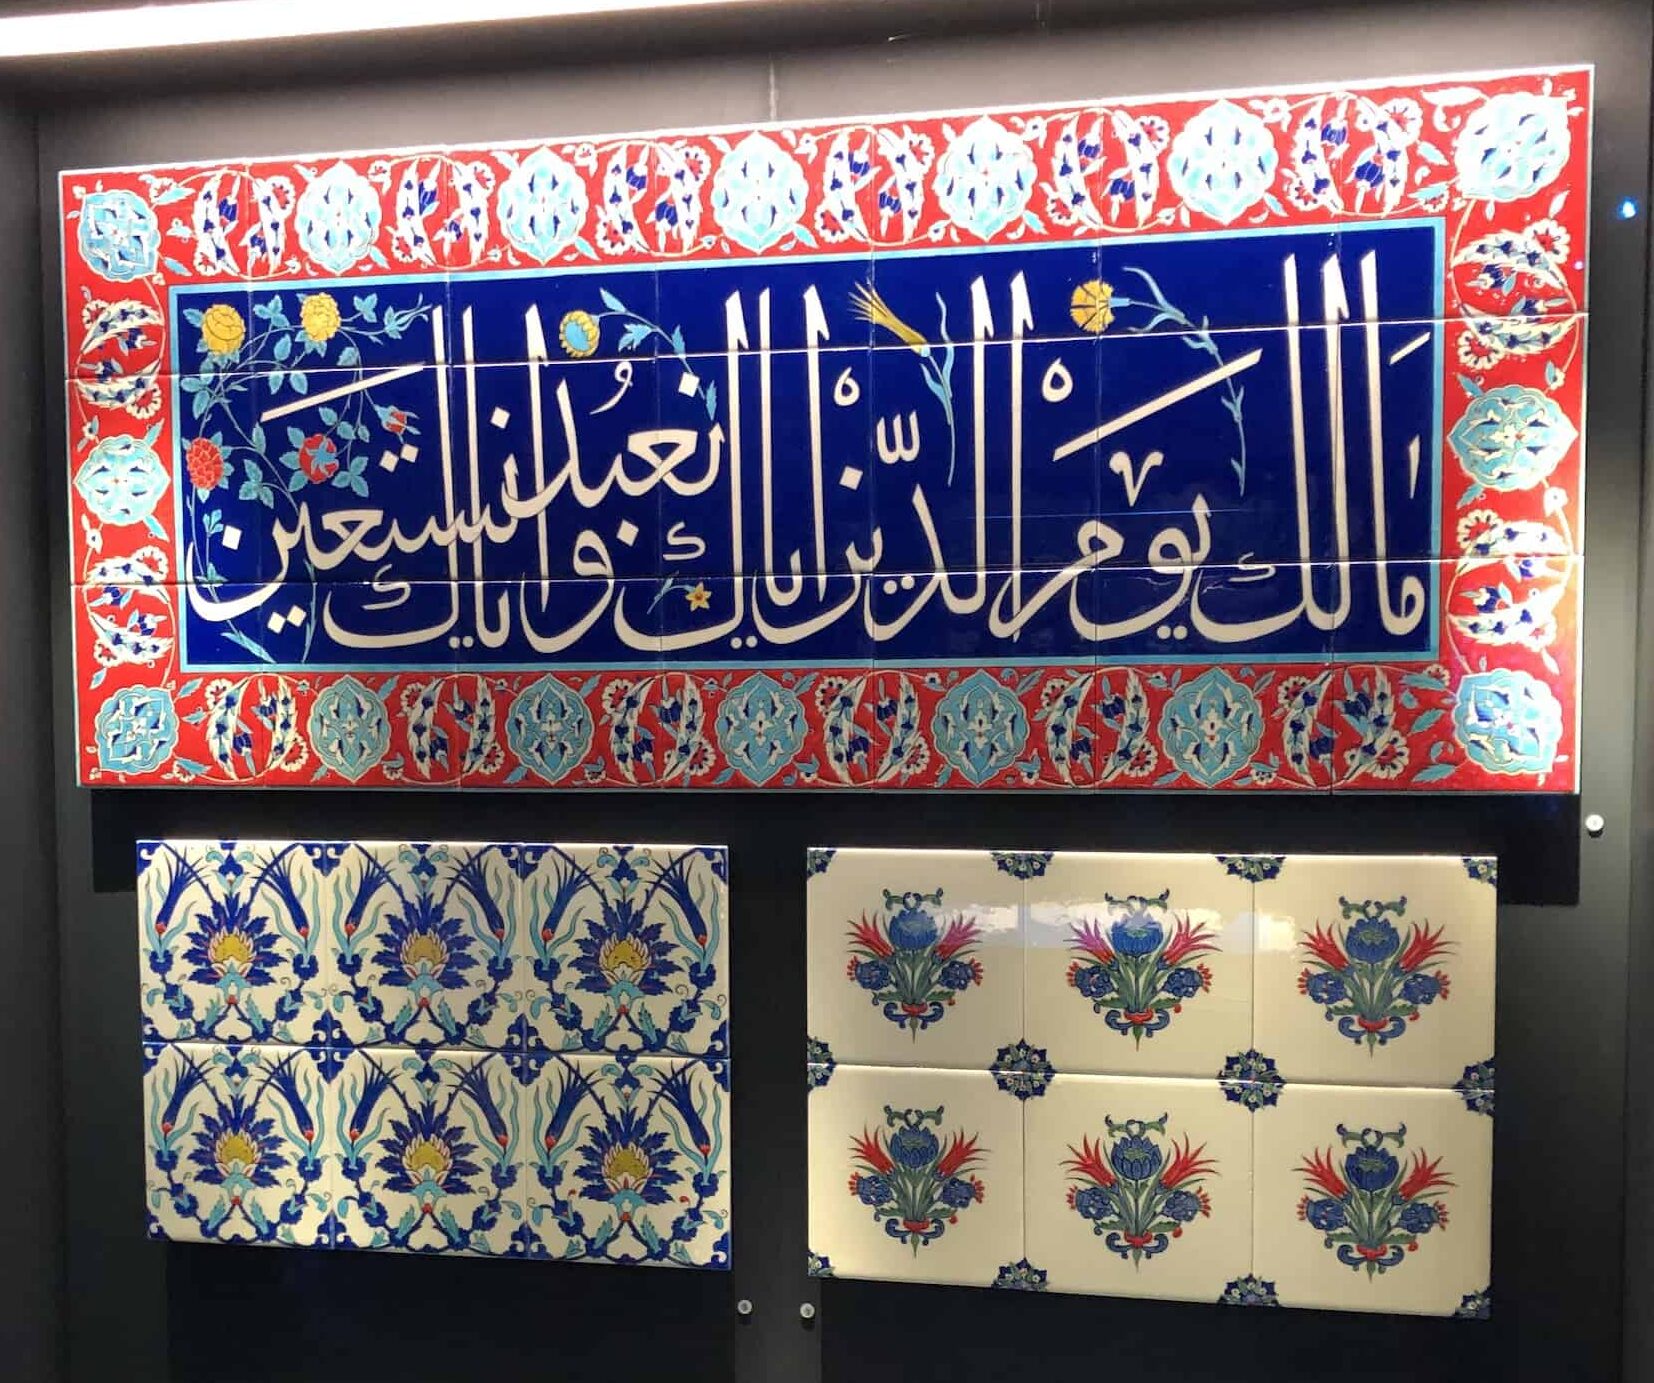 Replica tiles at the Tekfur Palace Museum